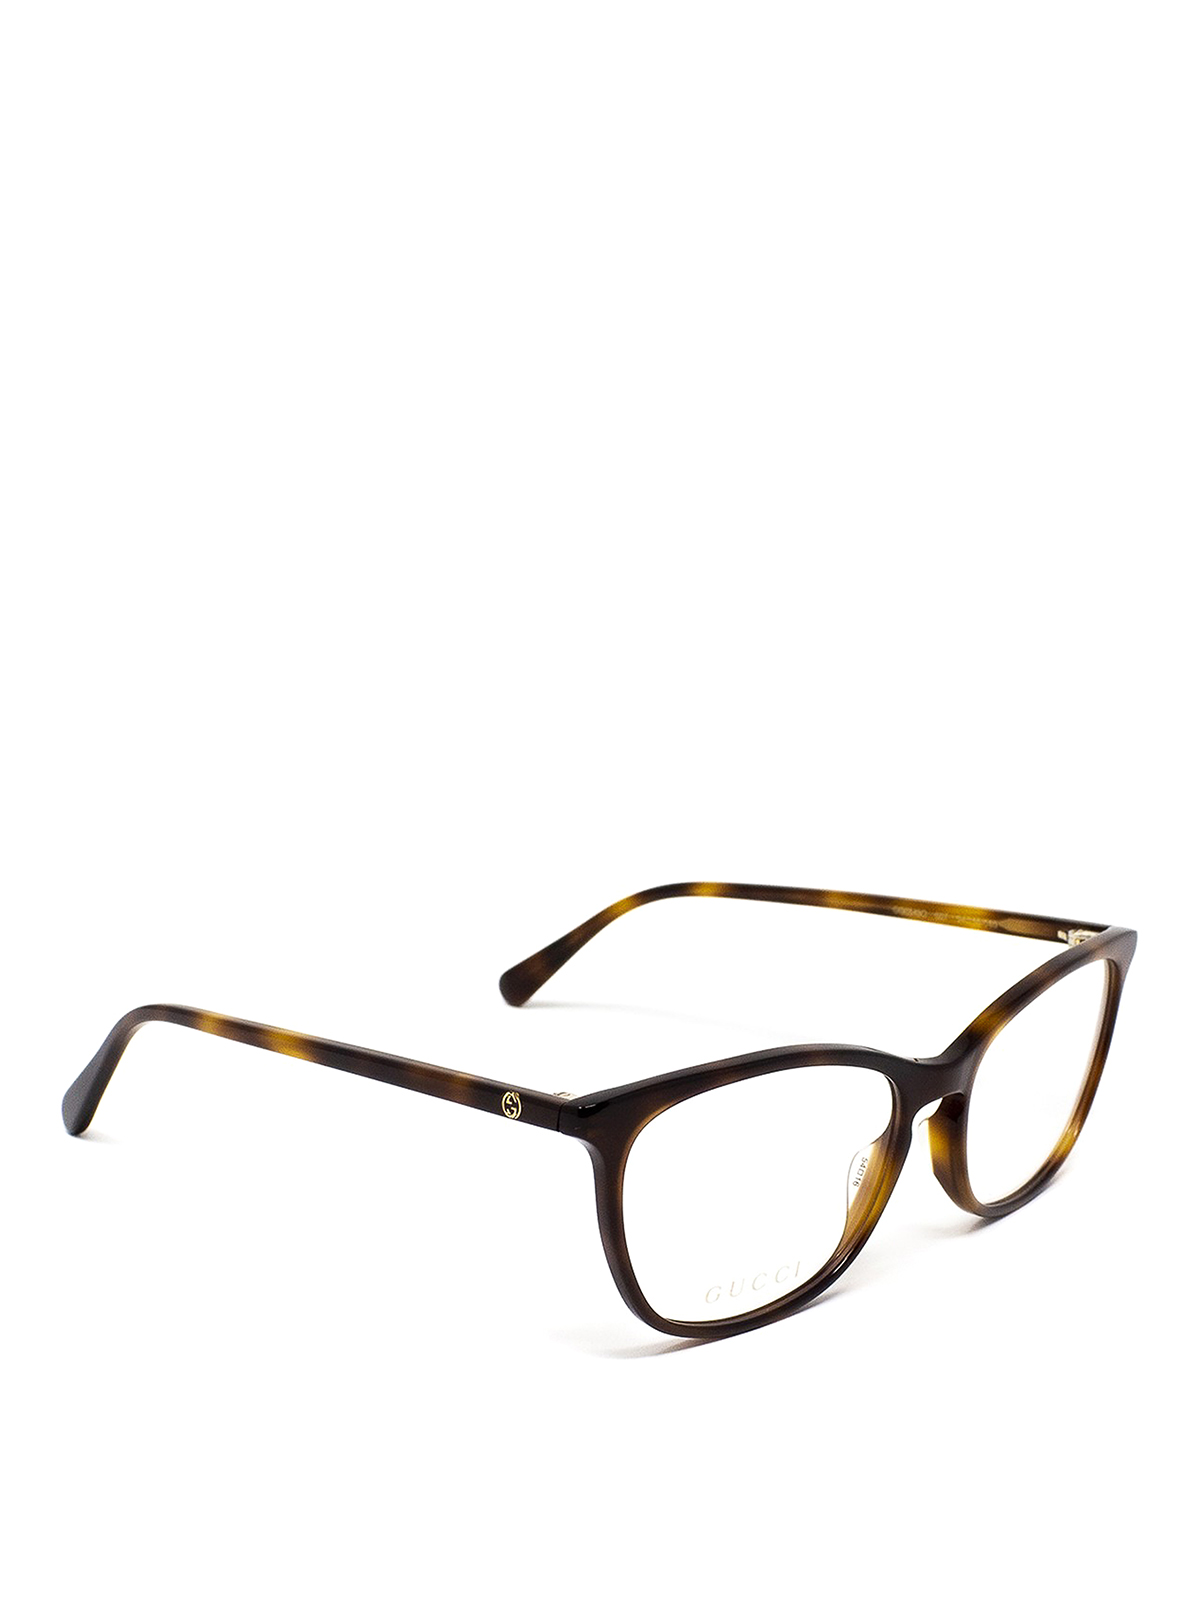 gucci tortoiseshell glasses